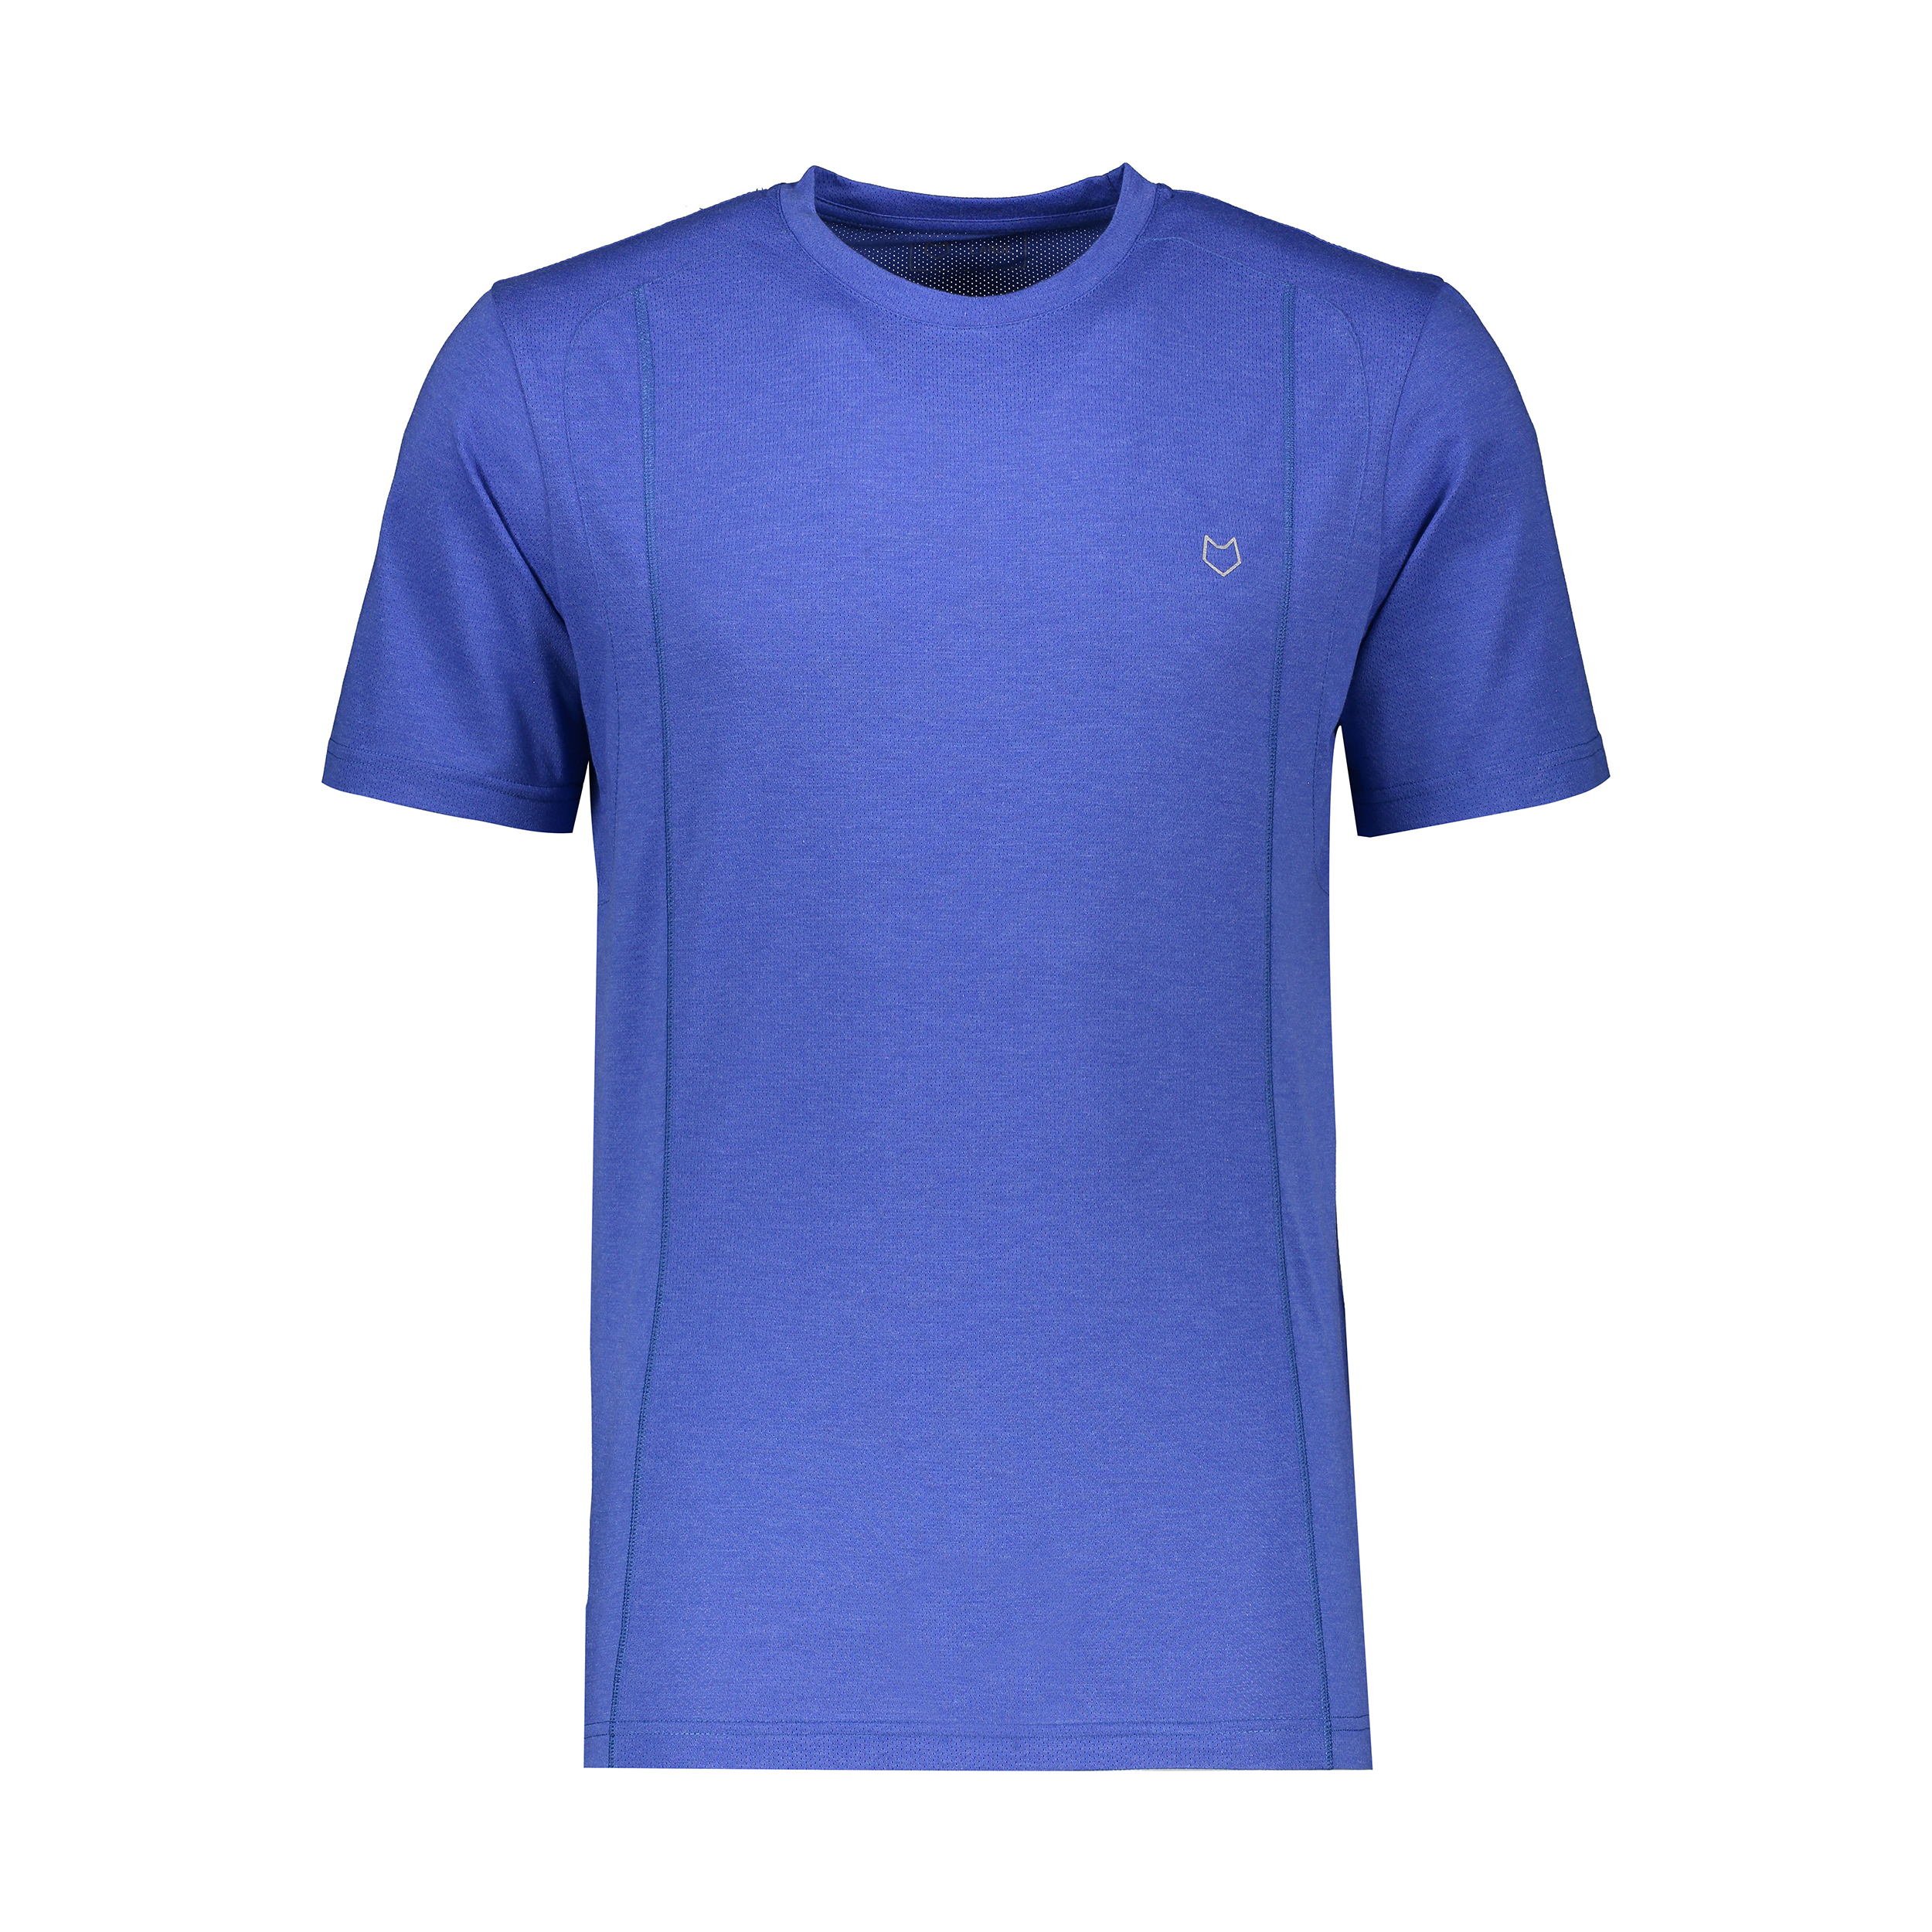 تی شرت آستین کوتاه ورزشی مردانه مل اند موژ مدل M07423-004 -  - 1